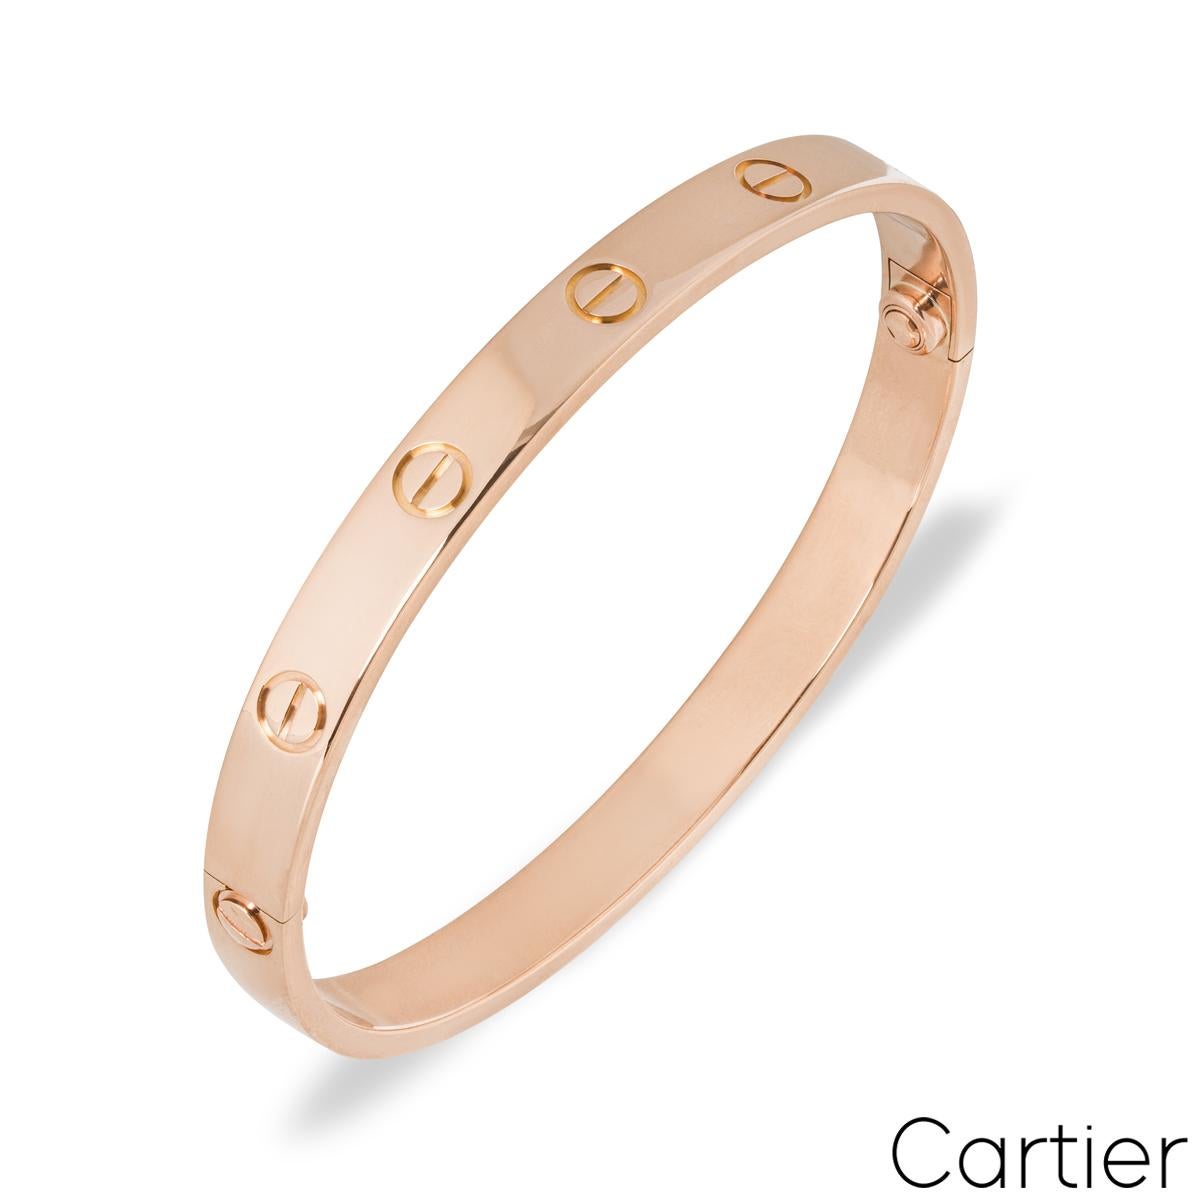 Ein Cartier-Armband aus 18 Karat Roségold aus der Collection'S Love. Das Armband besteht aus den ikonischen Schraubenmotiven am äußeren Rand. Das Armband hat die Größe 20 und verfügt über das neue Schraubensystem mit einem Bruttogewicht von 34,20